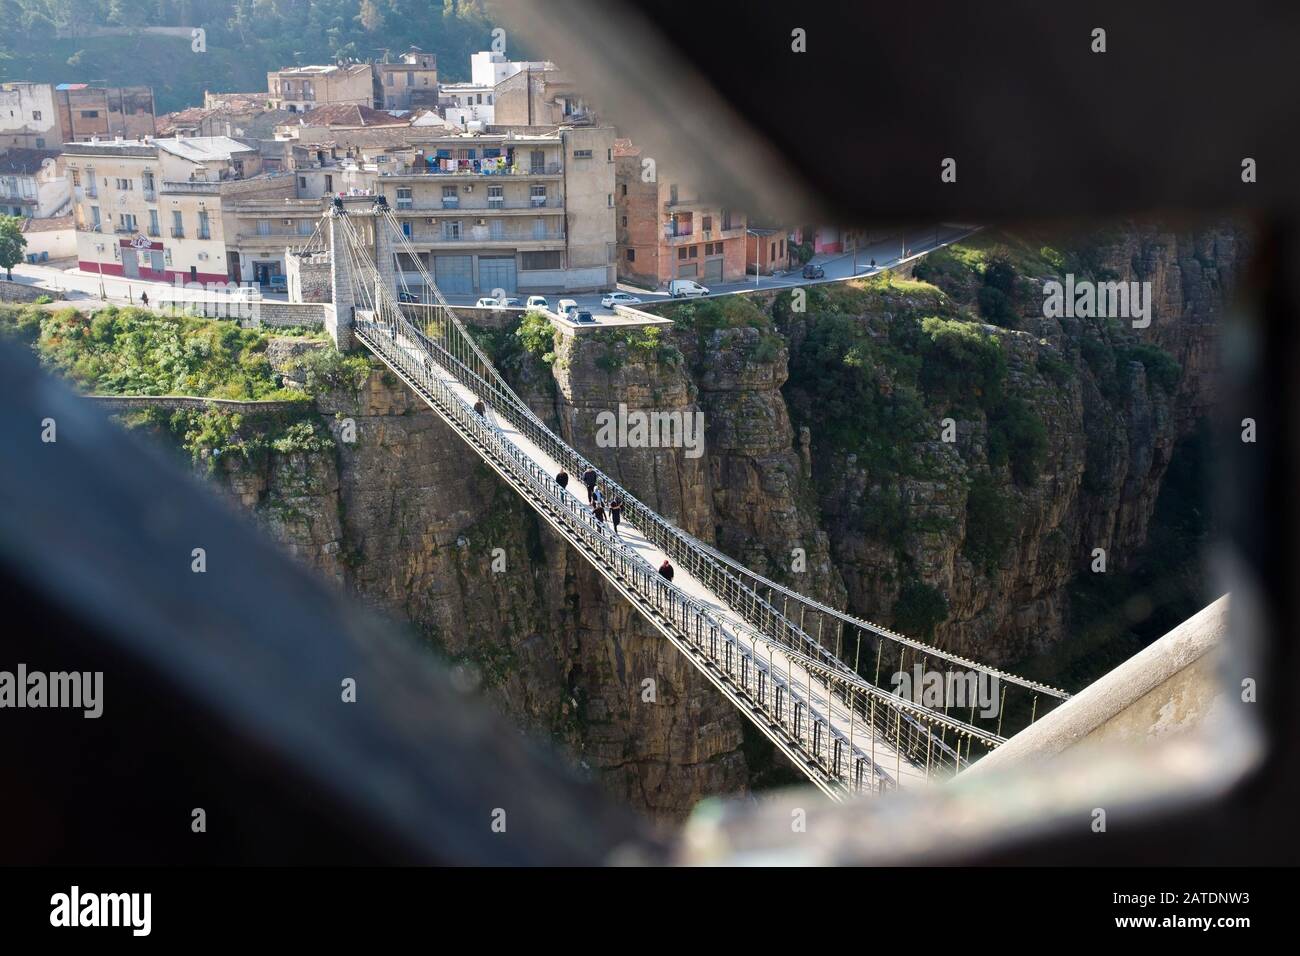 Les routes coupées dans les falaises relient les ponts suspendus du côté opposé de la gorge à Constantine, Ville des ponts, Algérie. Banque D'Images